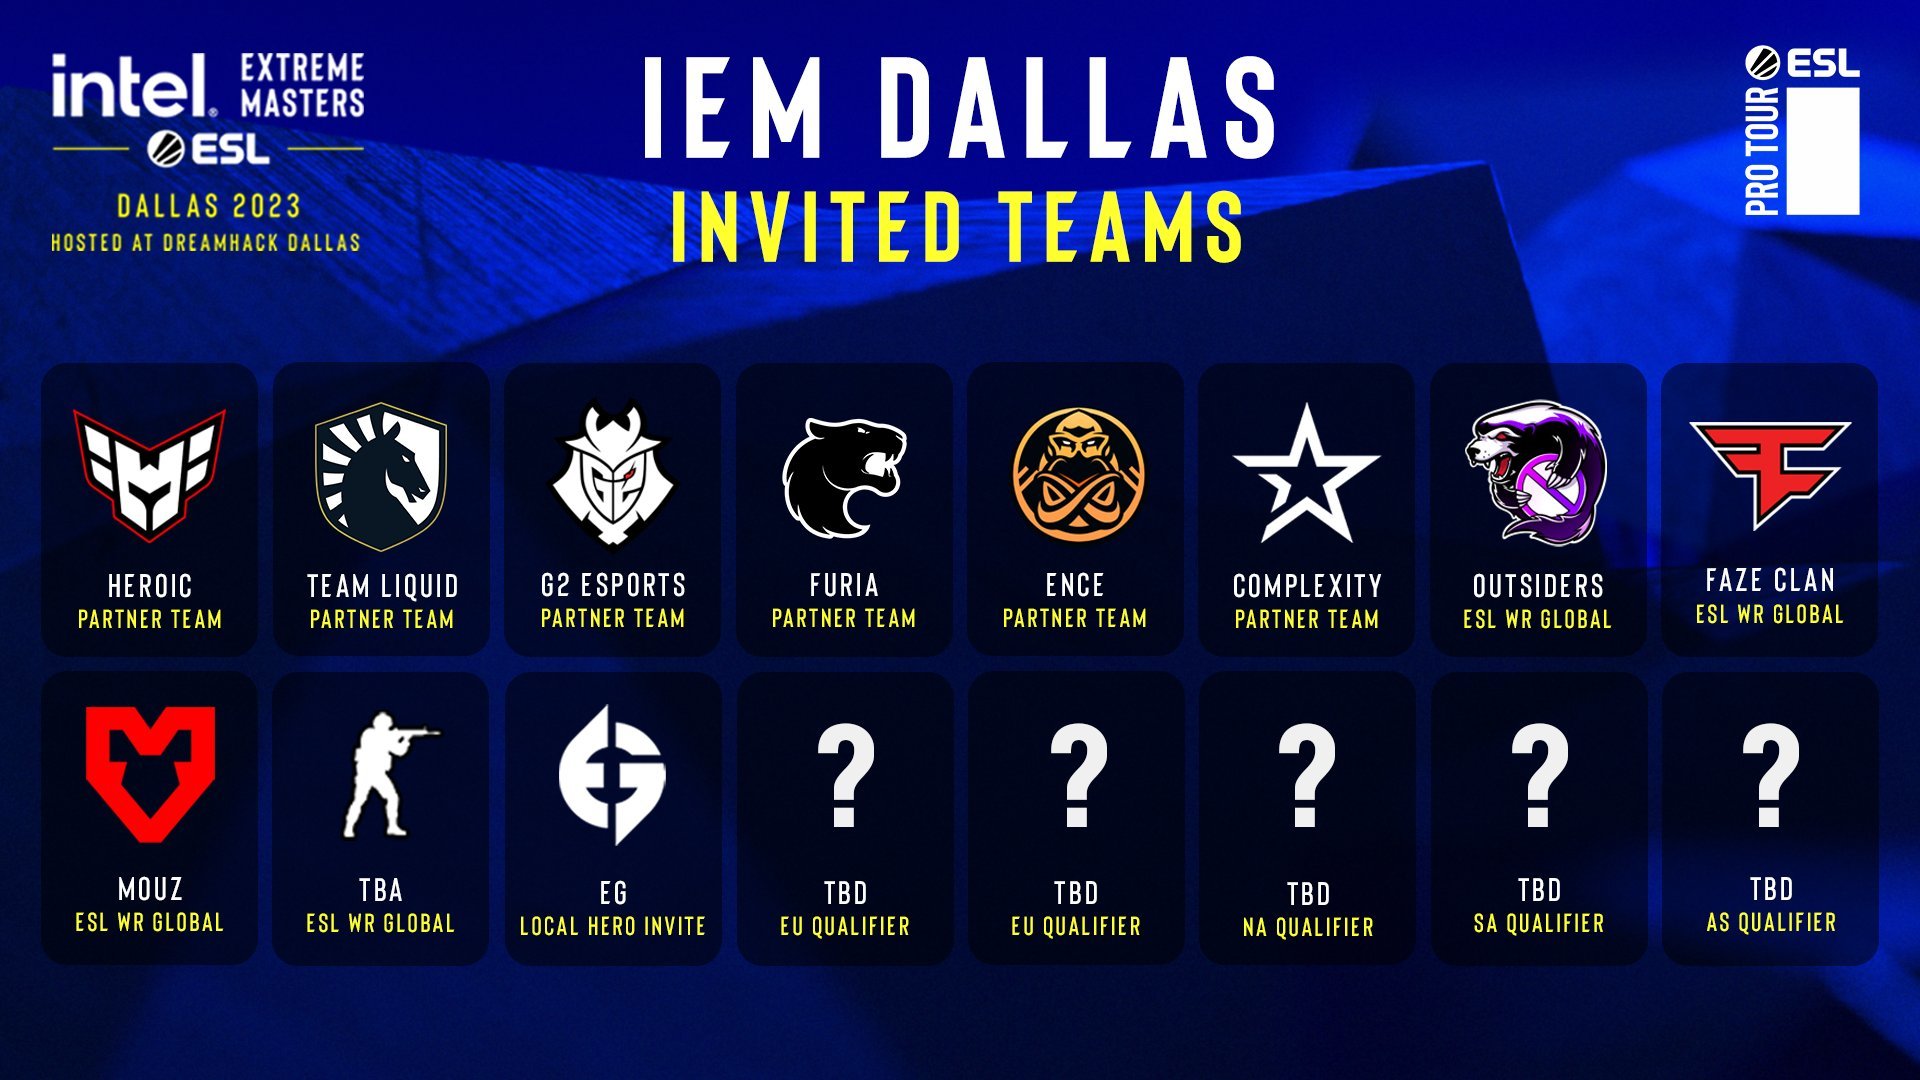 IEM Dallas guest teams have been announced